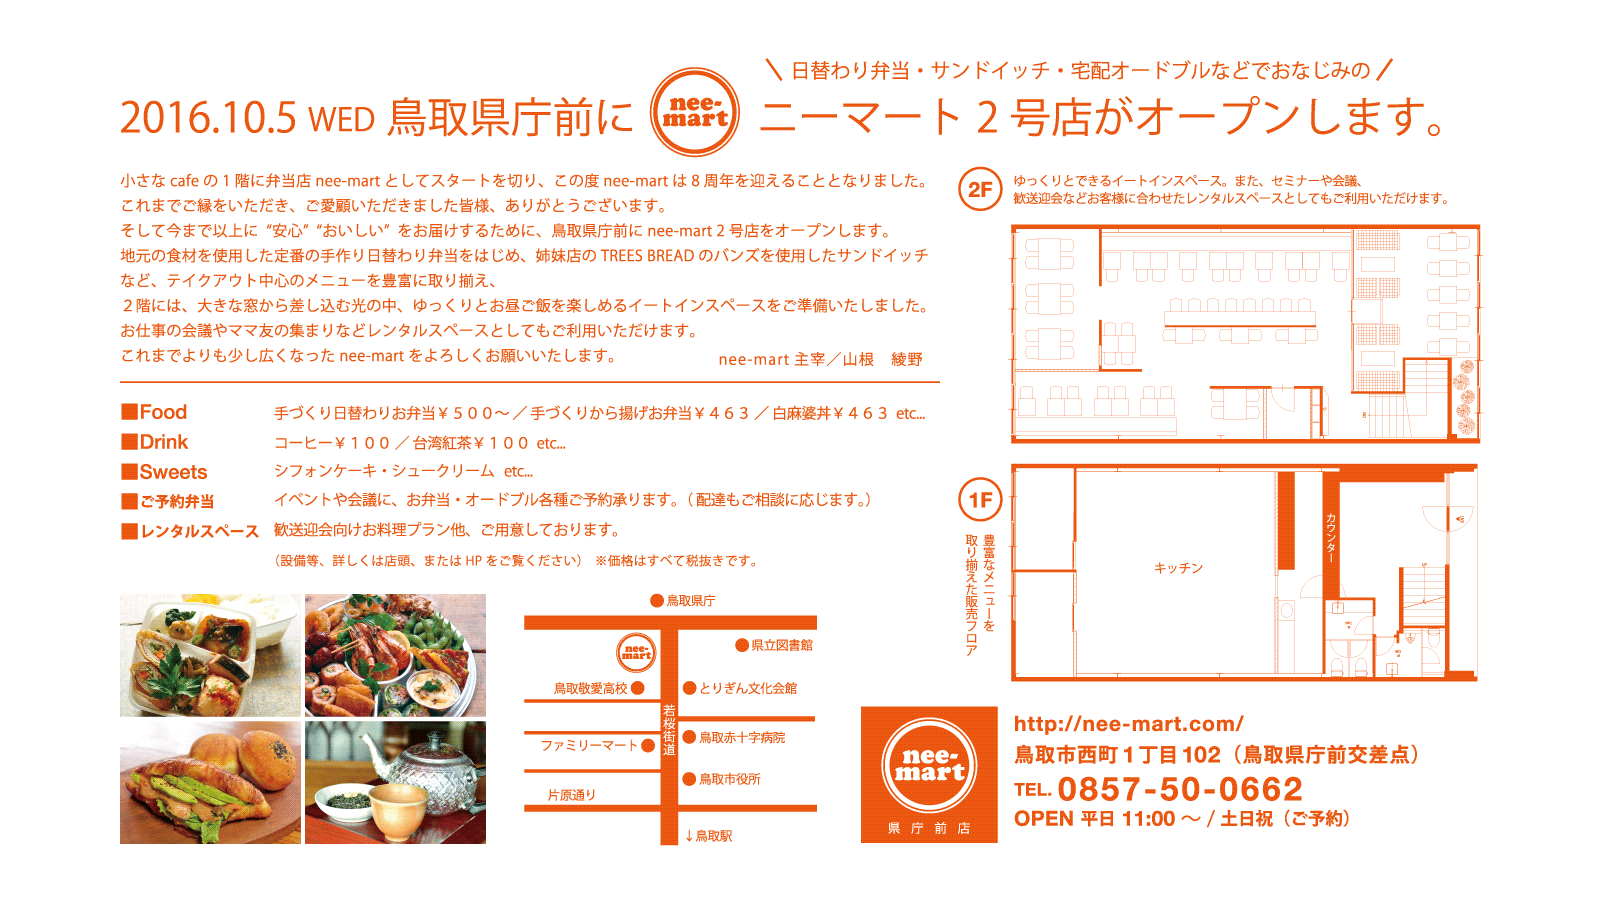 2016.10.05にOPENしたnee-mart 鳥取県庁前店